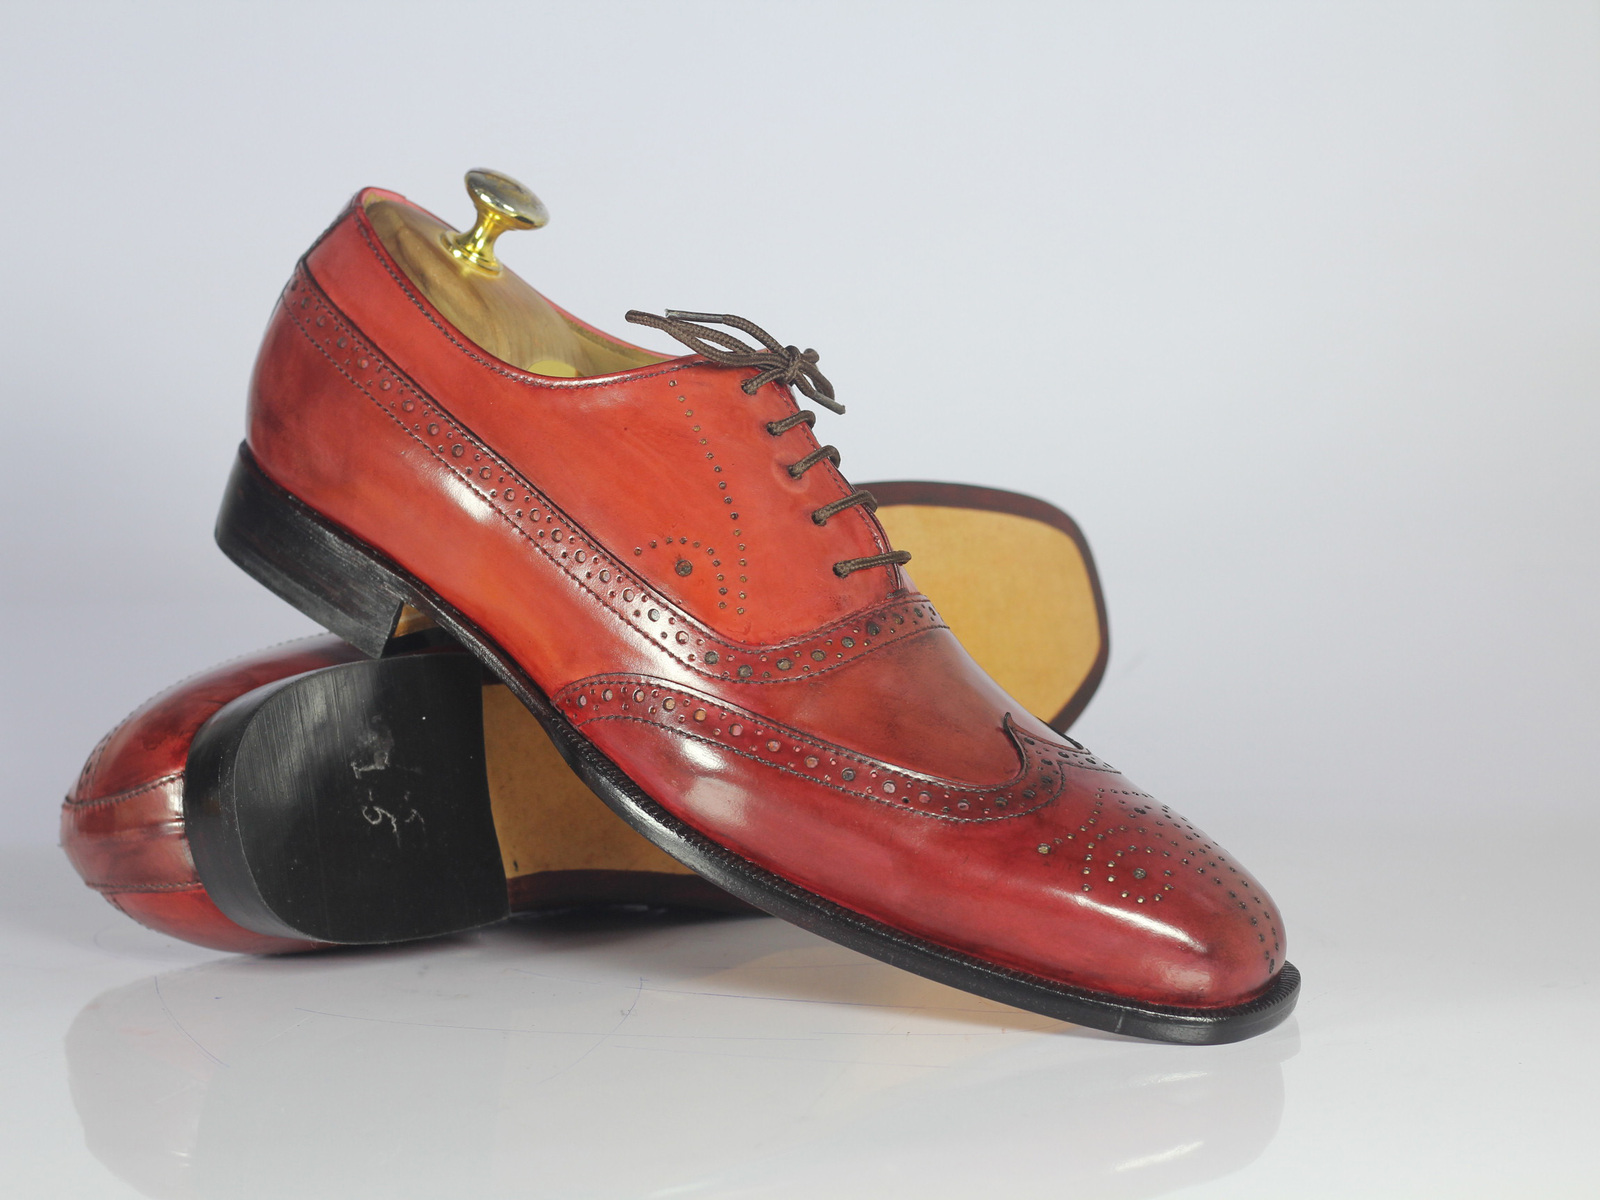 Handmade Men's Red Wing Tip Brogue Leather Formal Shoes, Men Designer Dress Shoe